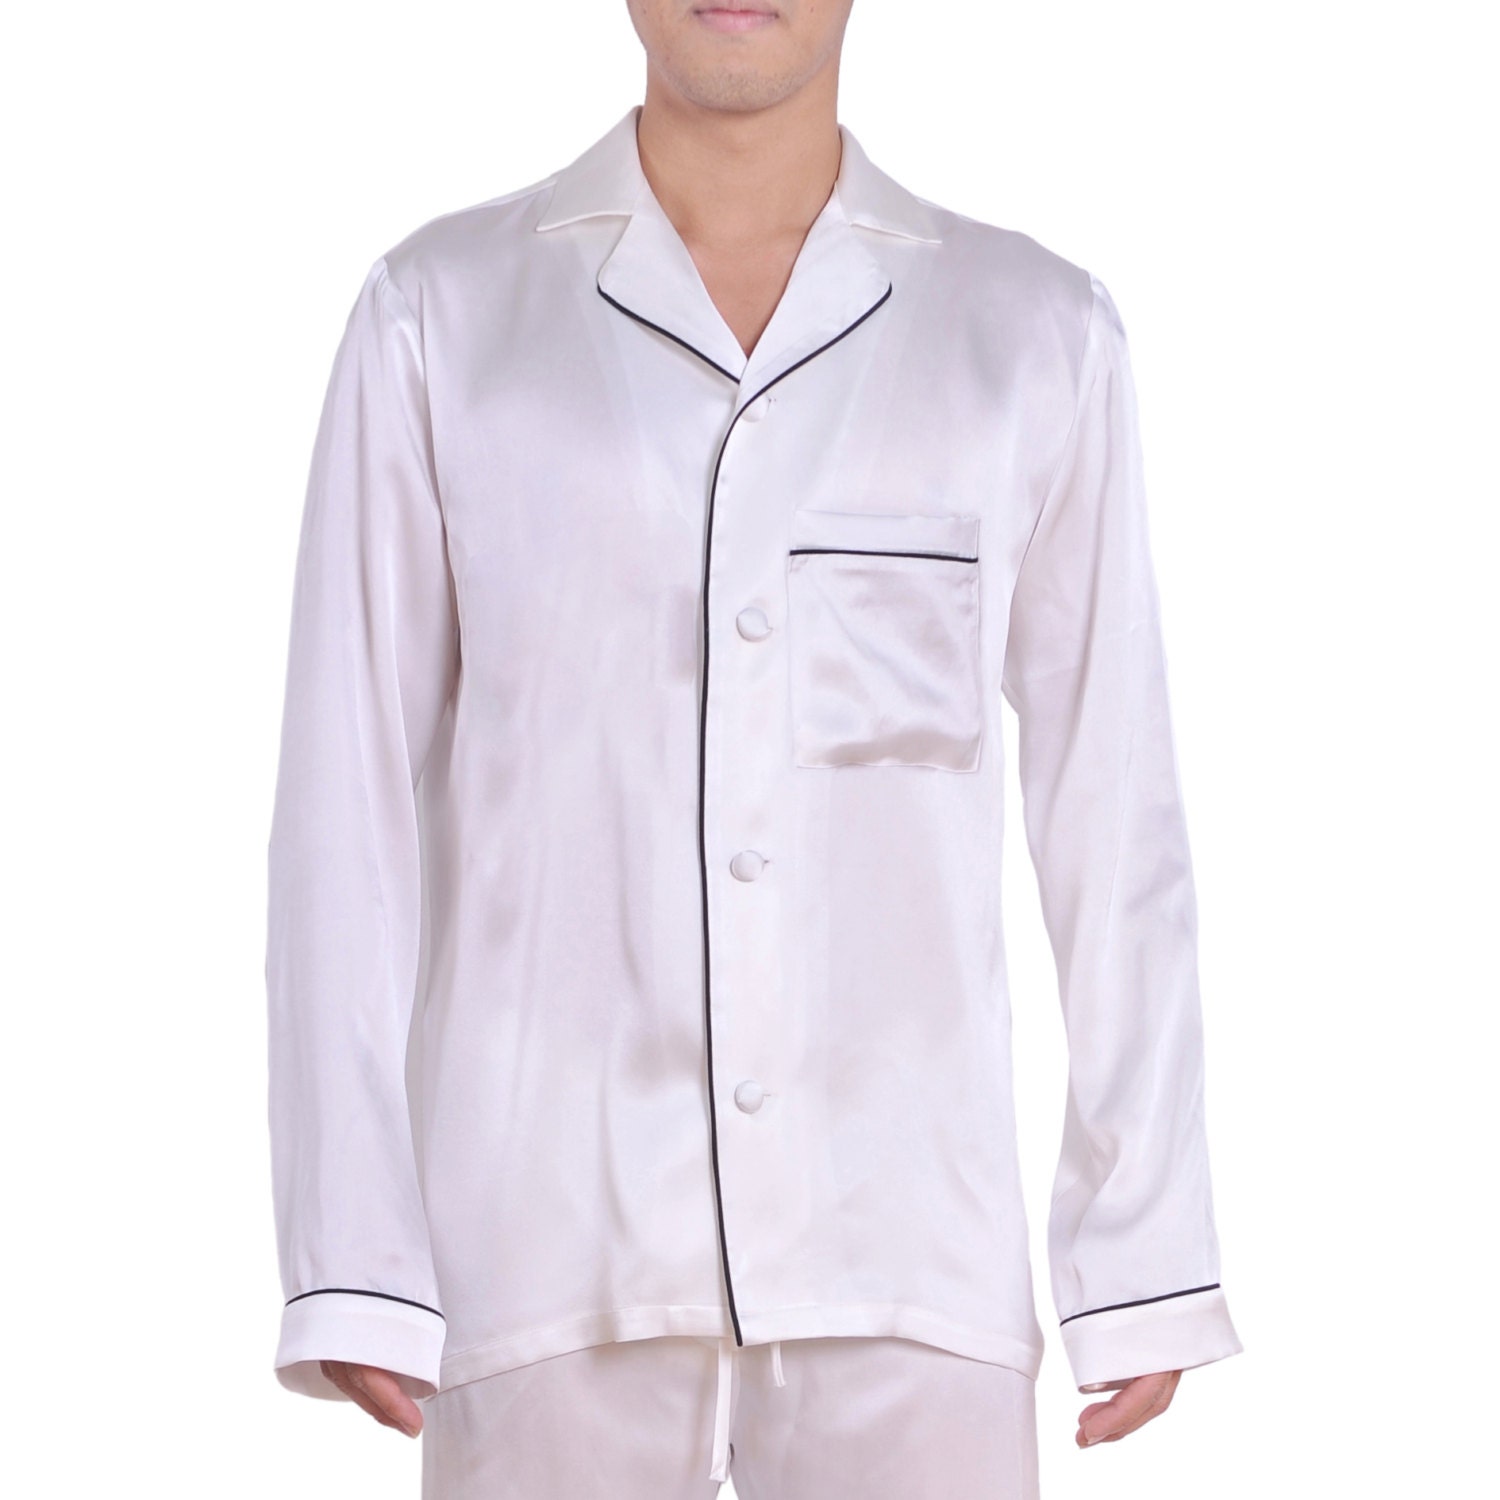 Pure silk Mens Pajama Top Sleep Shirt White Mens by ApparelFabrics